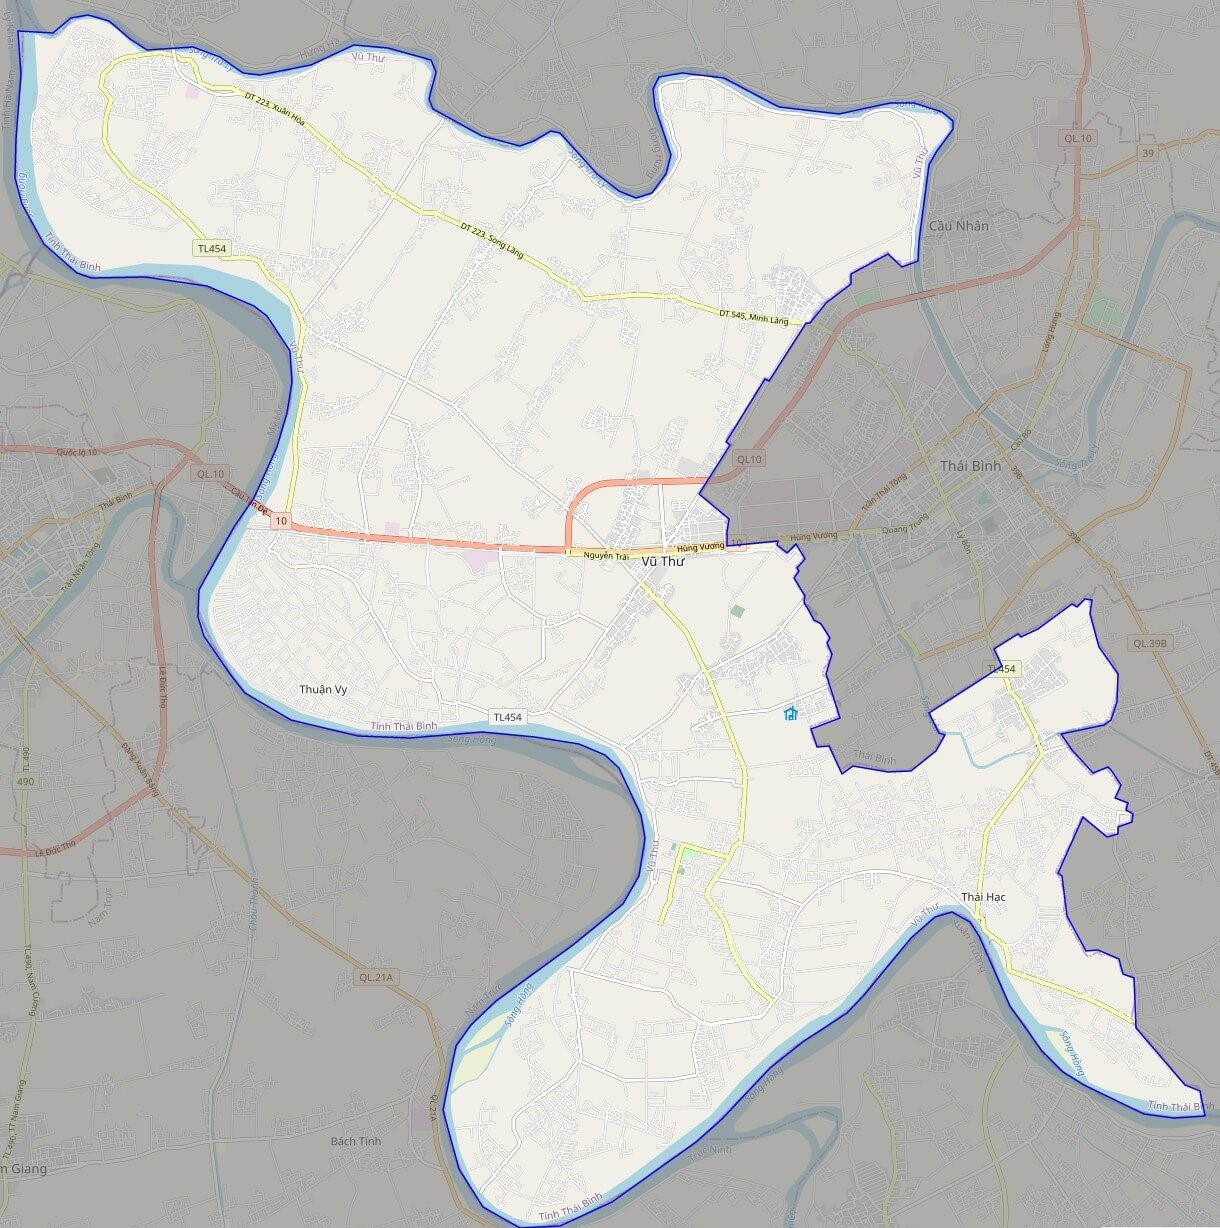 Bản đồ giao thông huyện Vũ Thư